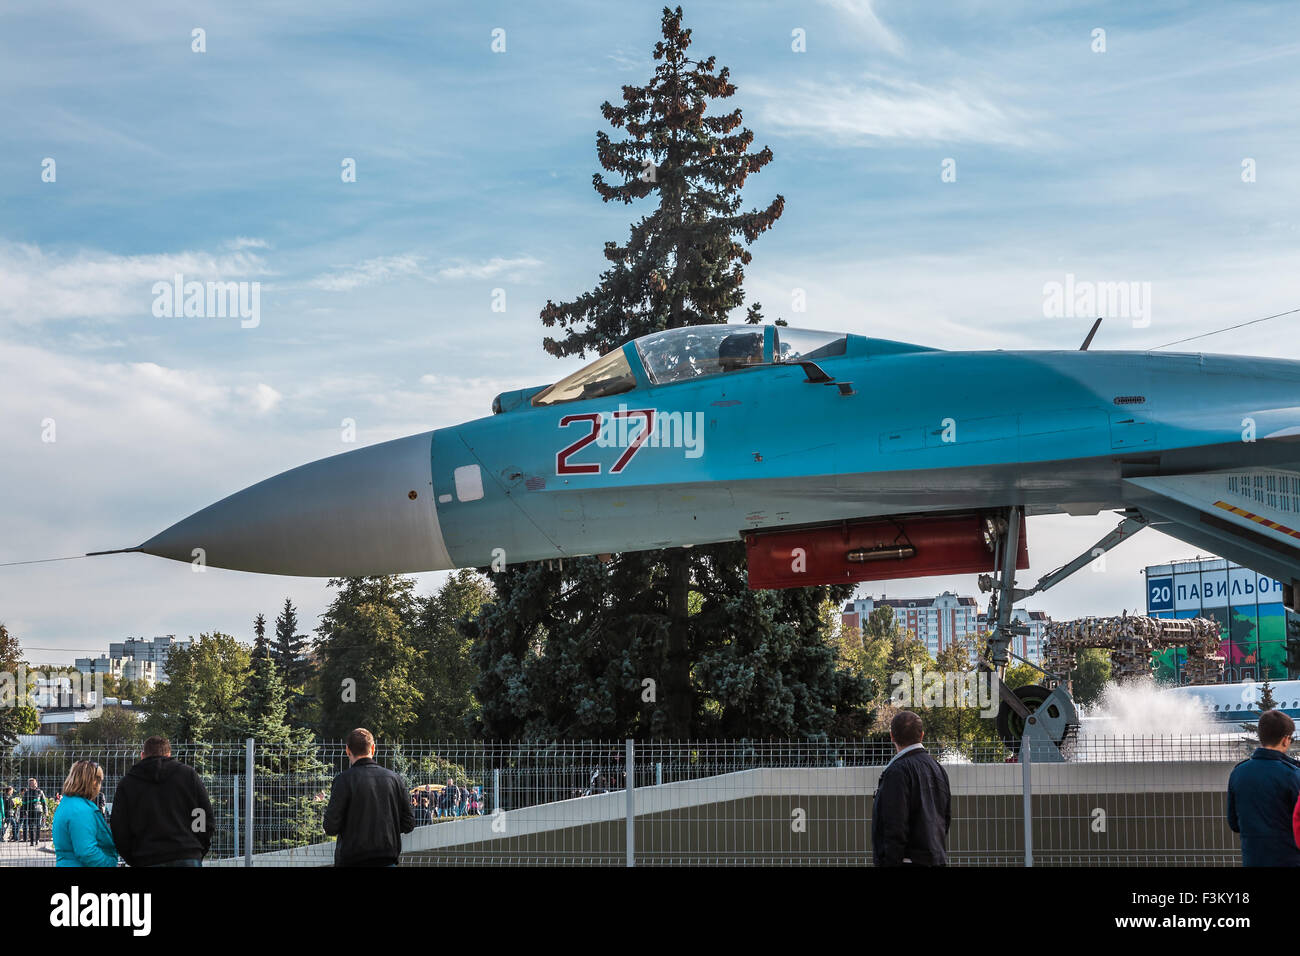 Moskau, Russland - 5. Oktober 2015: Teil des Messegeländes VDNH (VVC), Moskau, Russland. Die alten Militärflugzeug verursacht intere Stockfoto